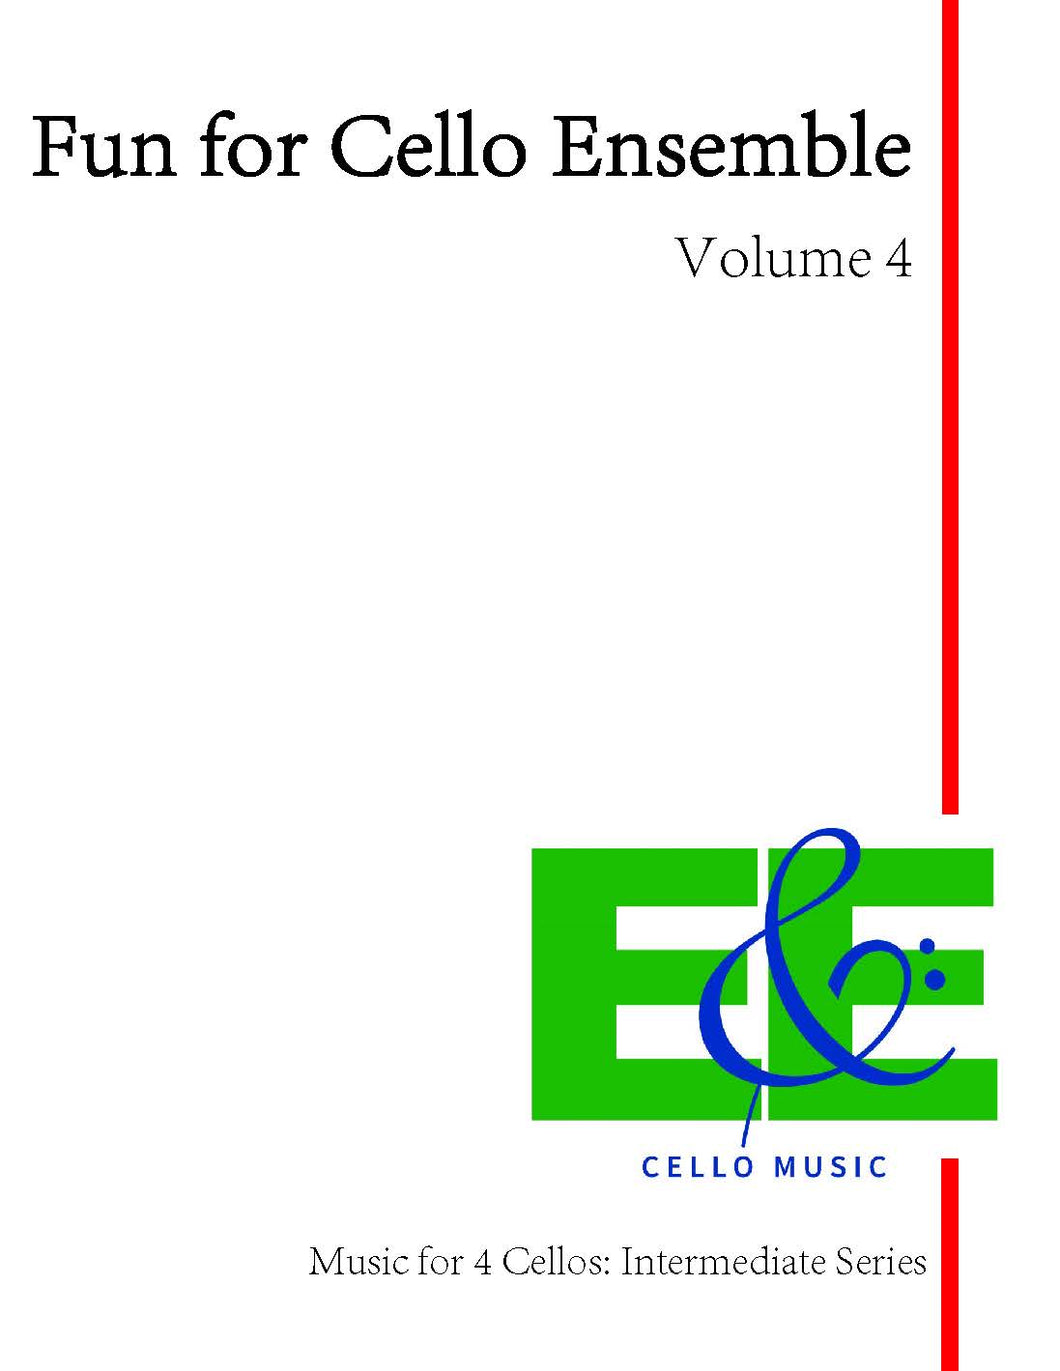 Fun for Cello Ensemble Vol. 4<br>Music for 4 Cellos:<br>Intermediate Series